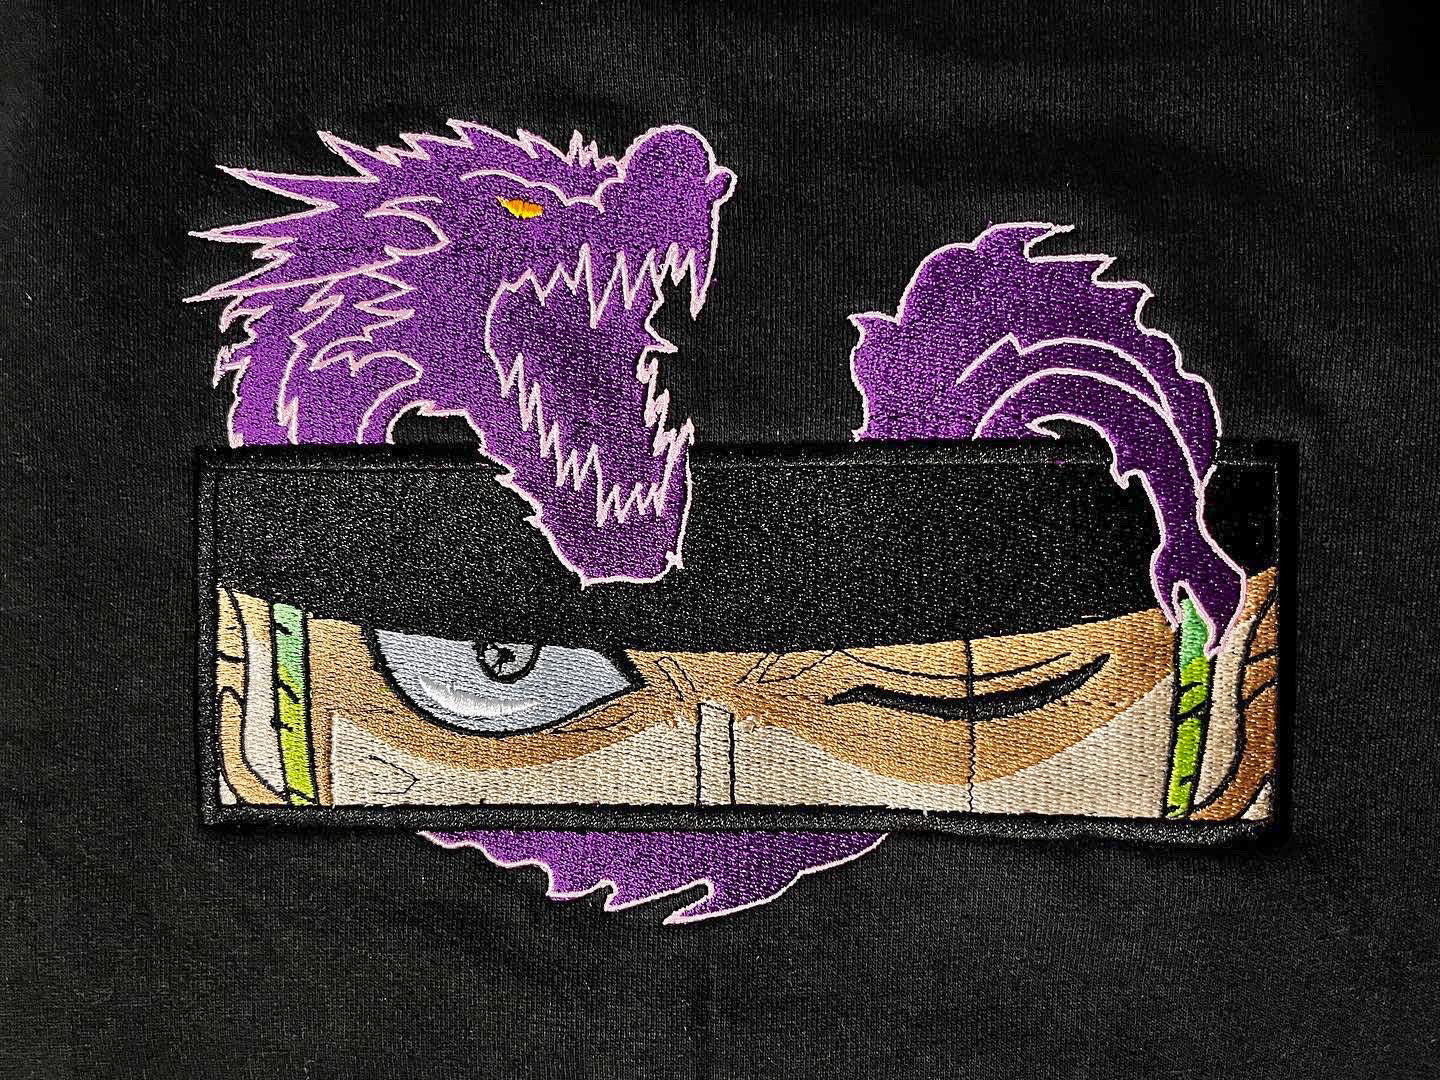 Roronoa Zoro Eyes Embroidery (One Piece)